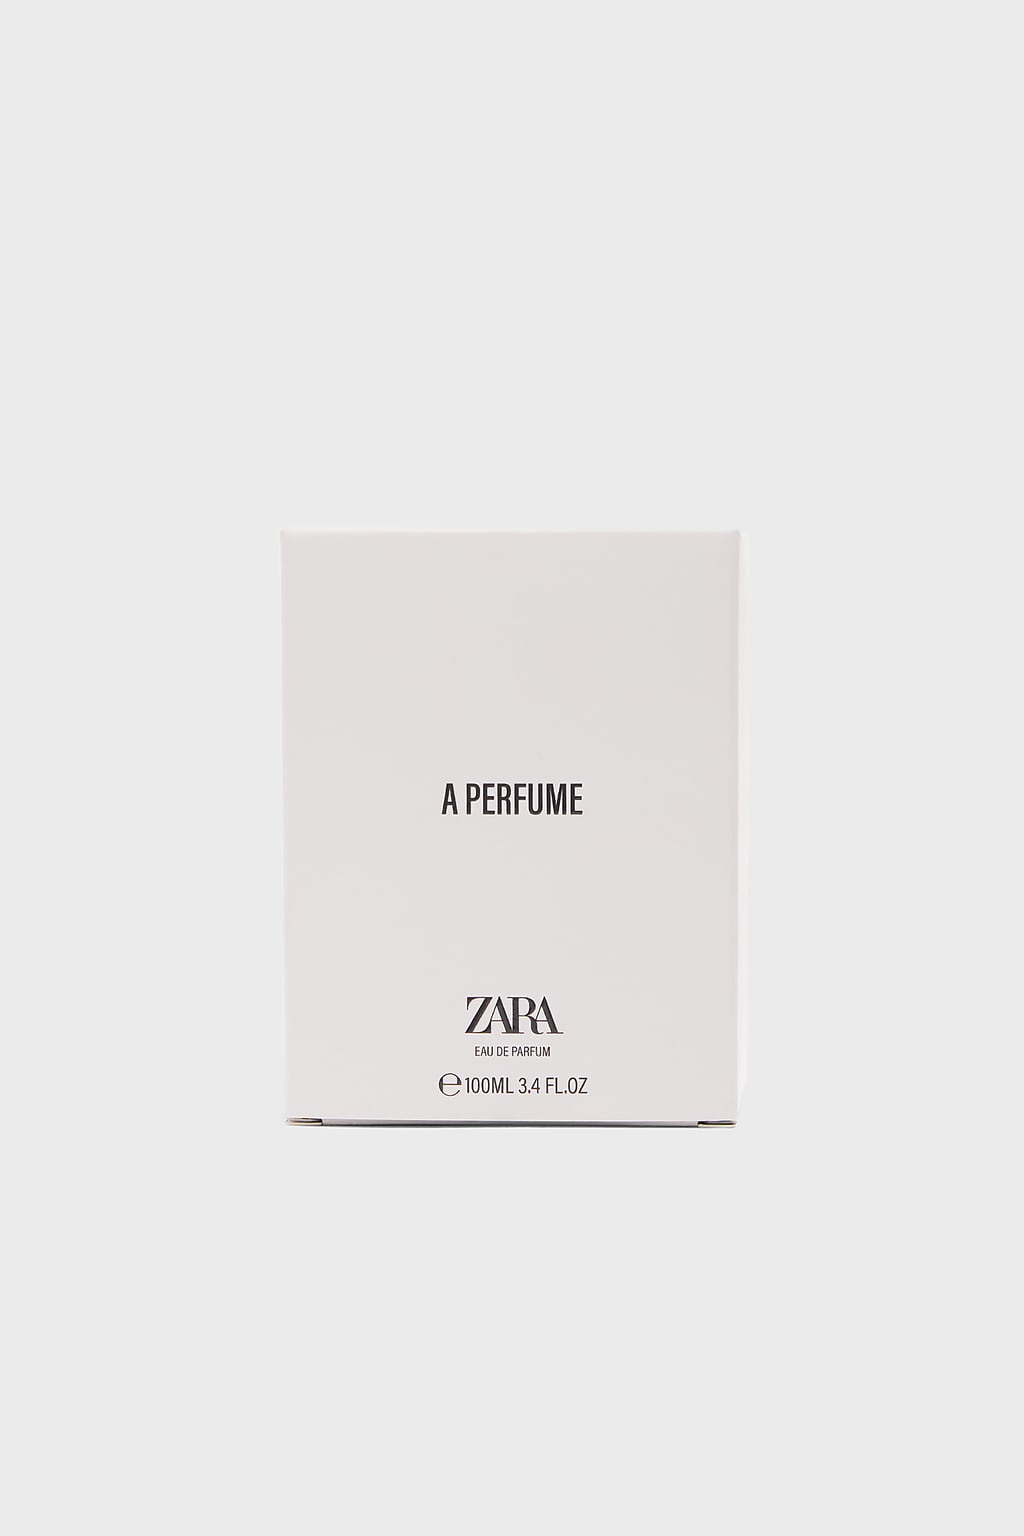 A Perfume Zara parfum - un nouveau parfum pour femme 2019